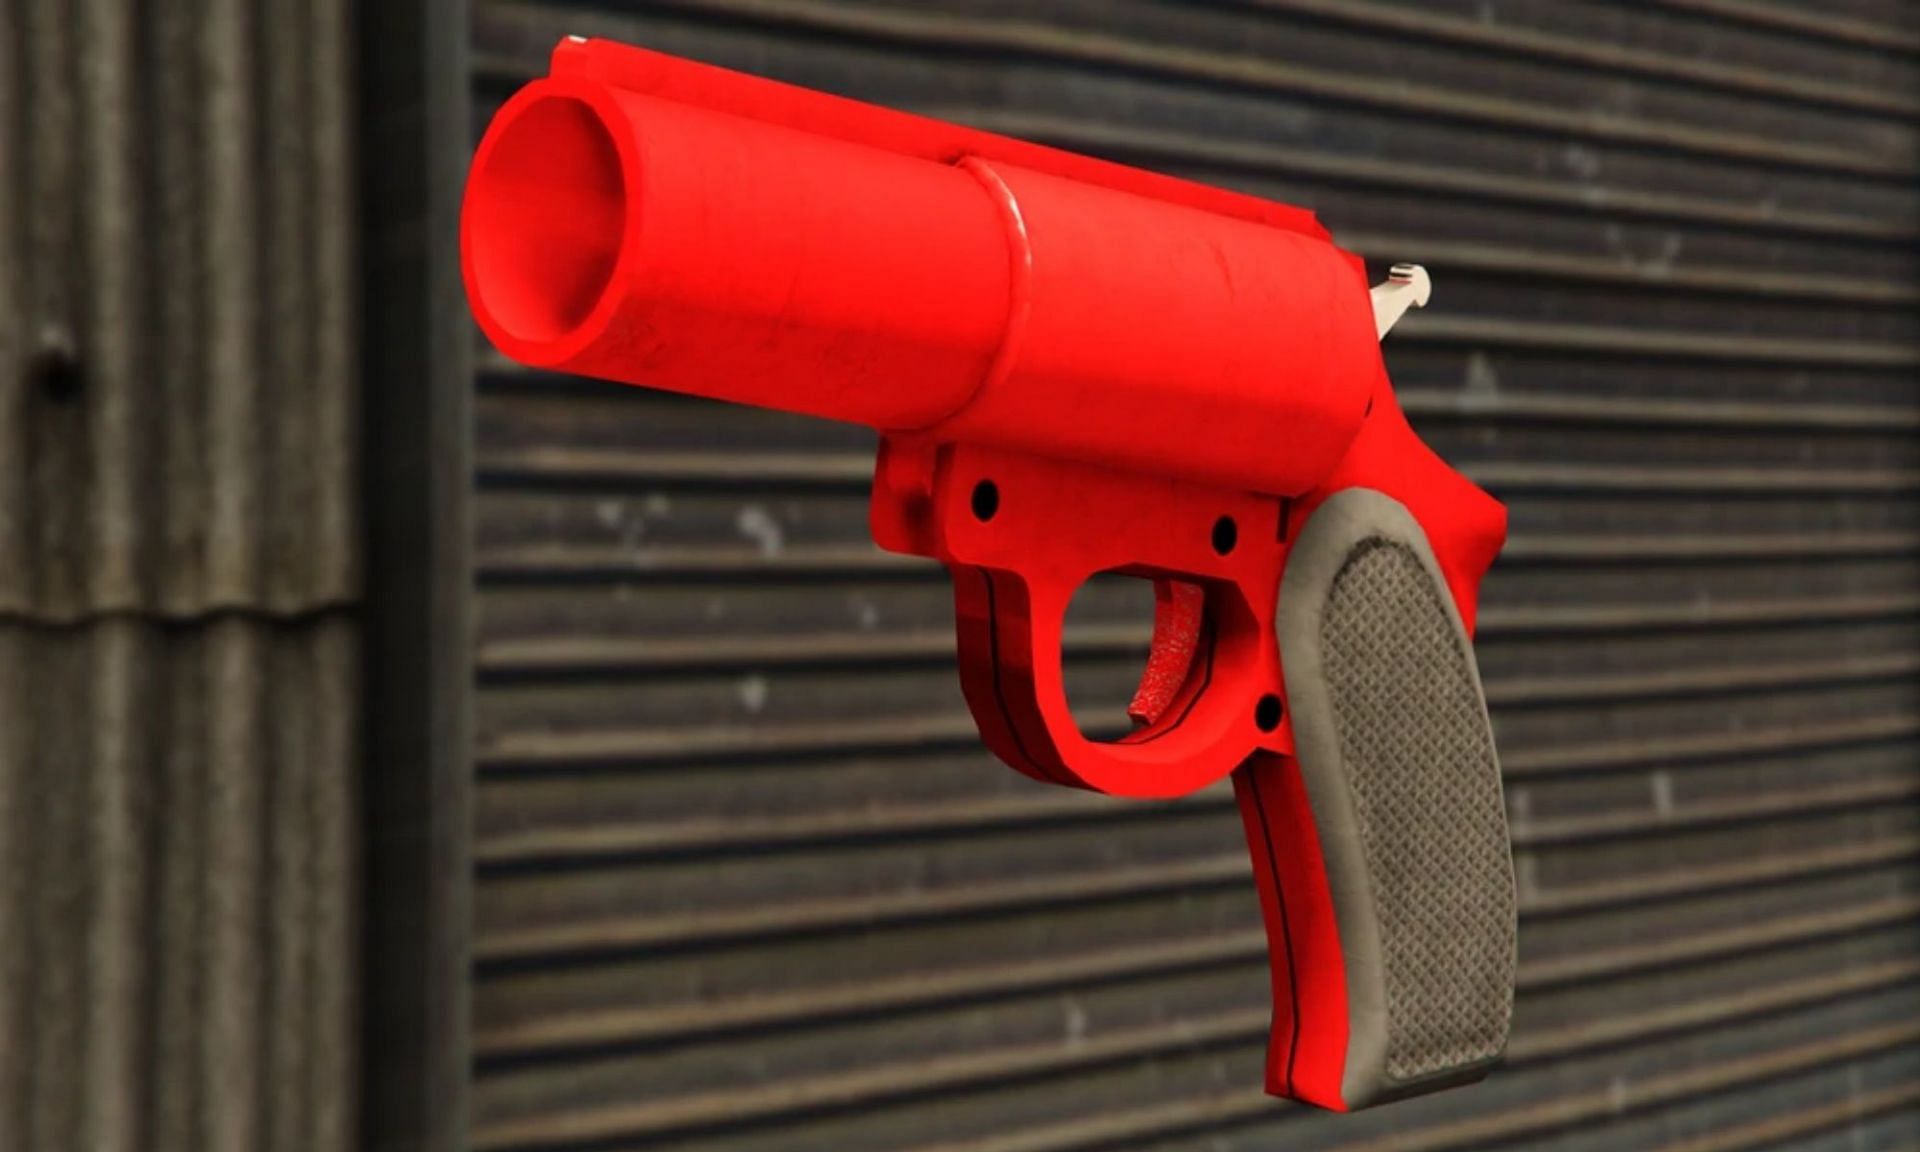 How to get every GTA Online handgun for free - Dexerto